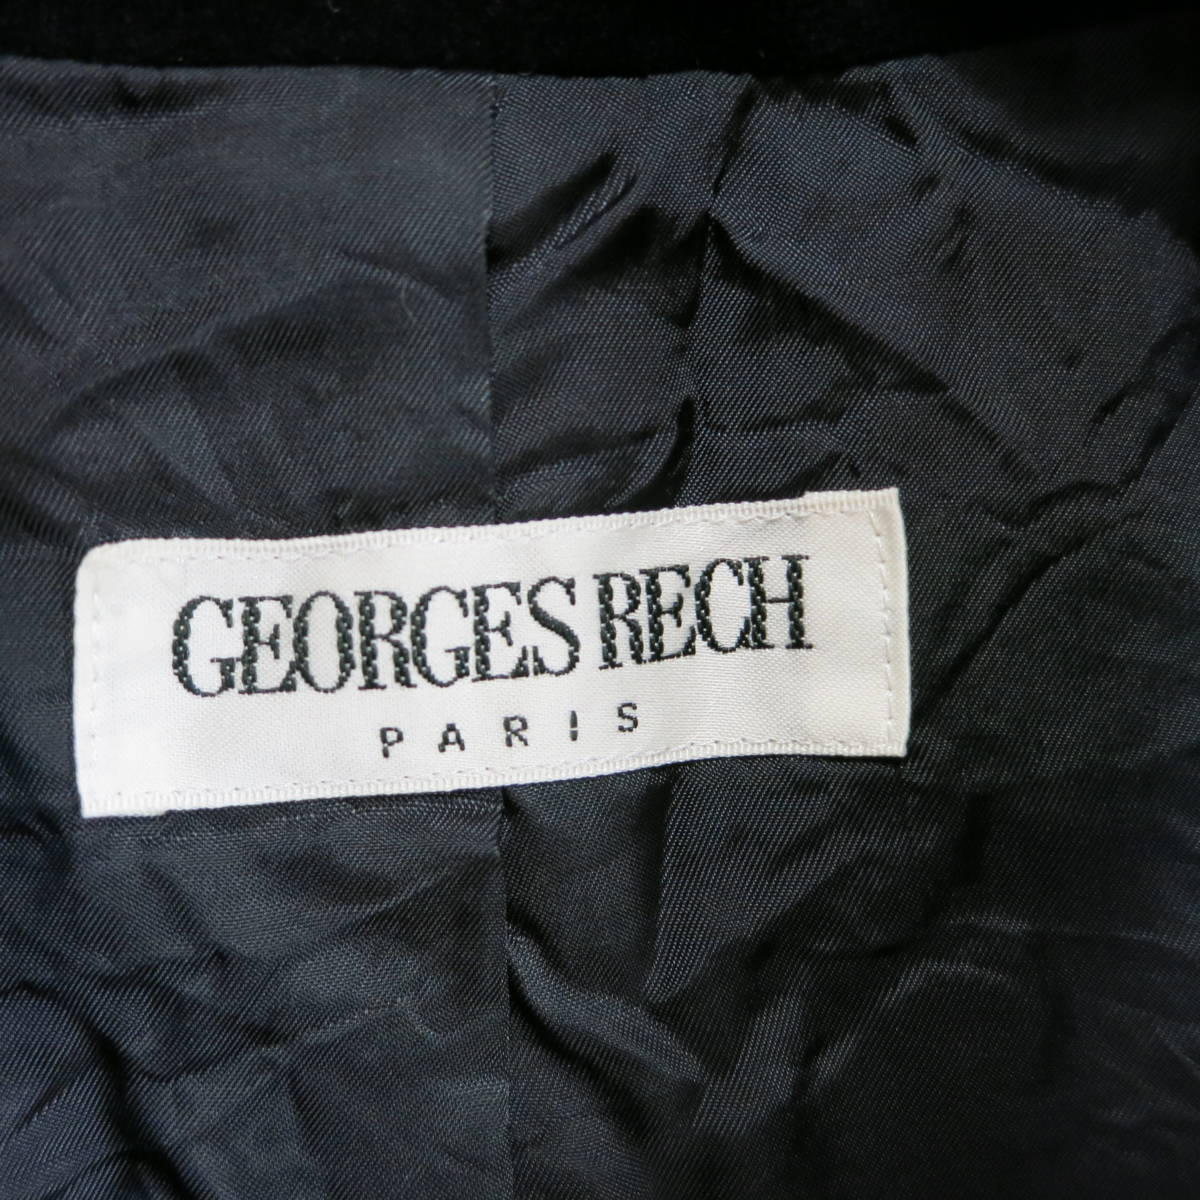 GEORGES RECH ジョルジュ レッシュ ベロア テーラードジャケット サイズ38 M ブラック 黒 4300